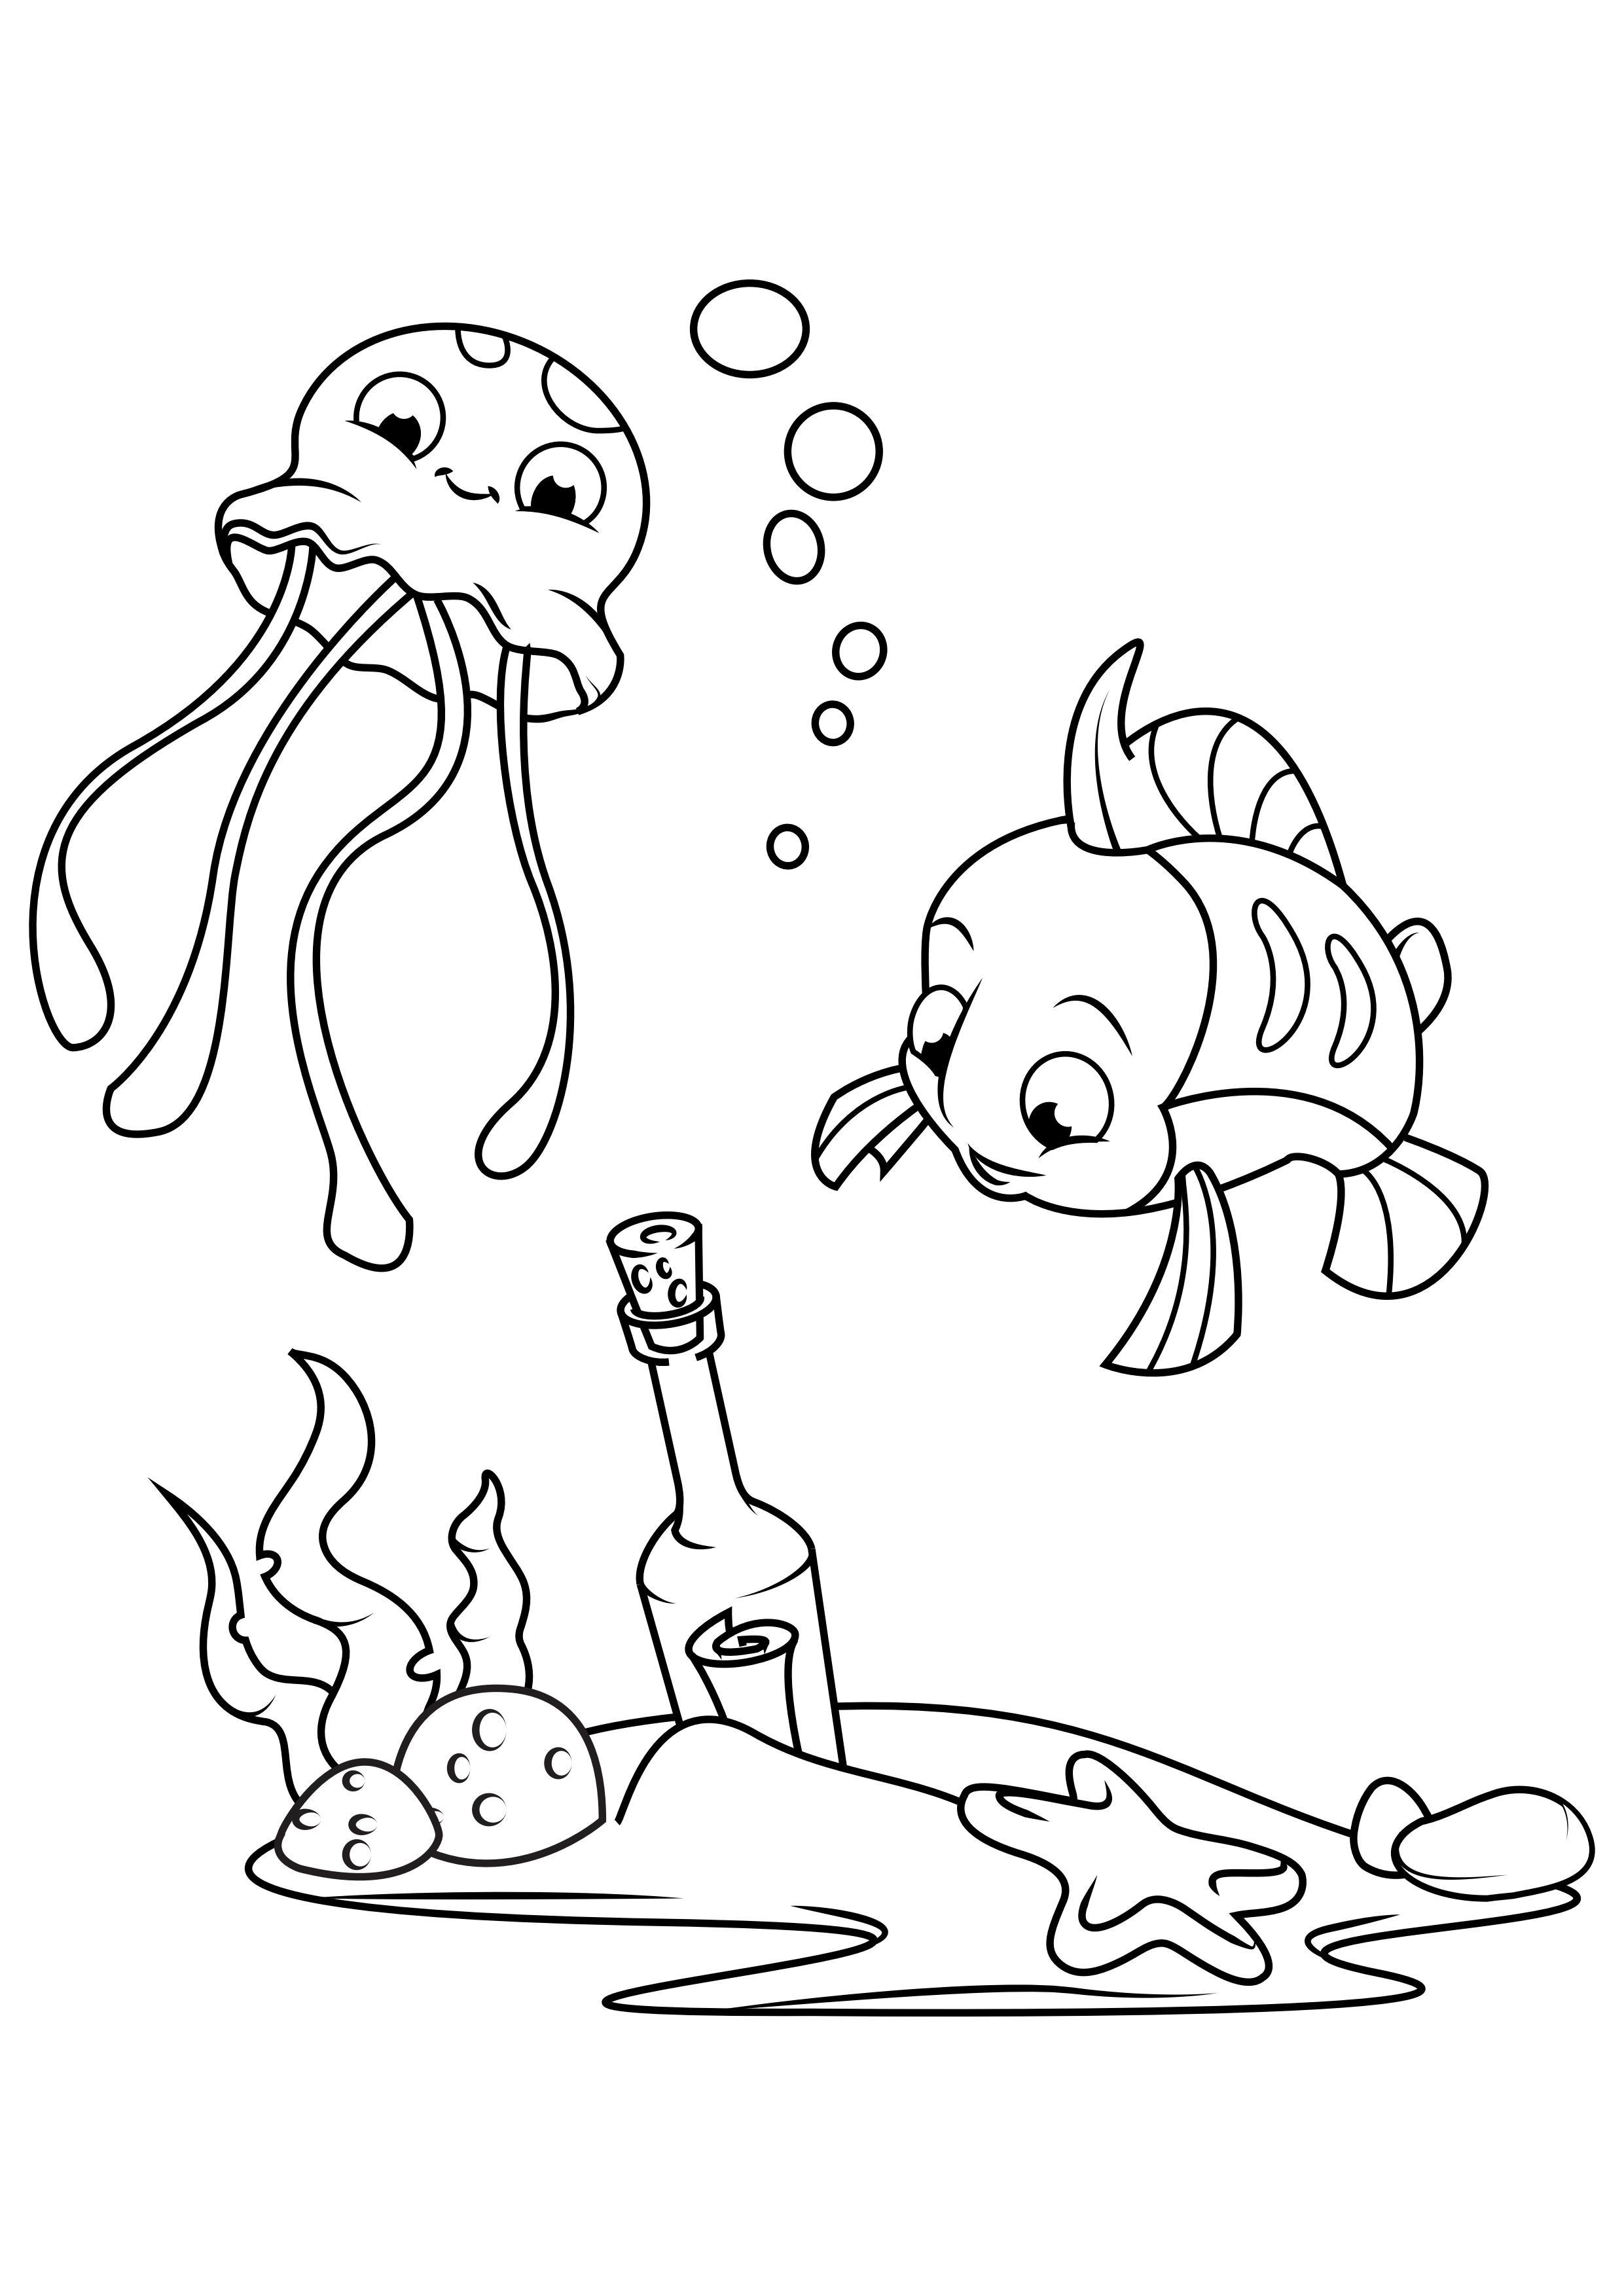 Kleurplaat octopus en vis met fles